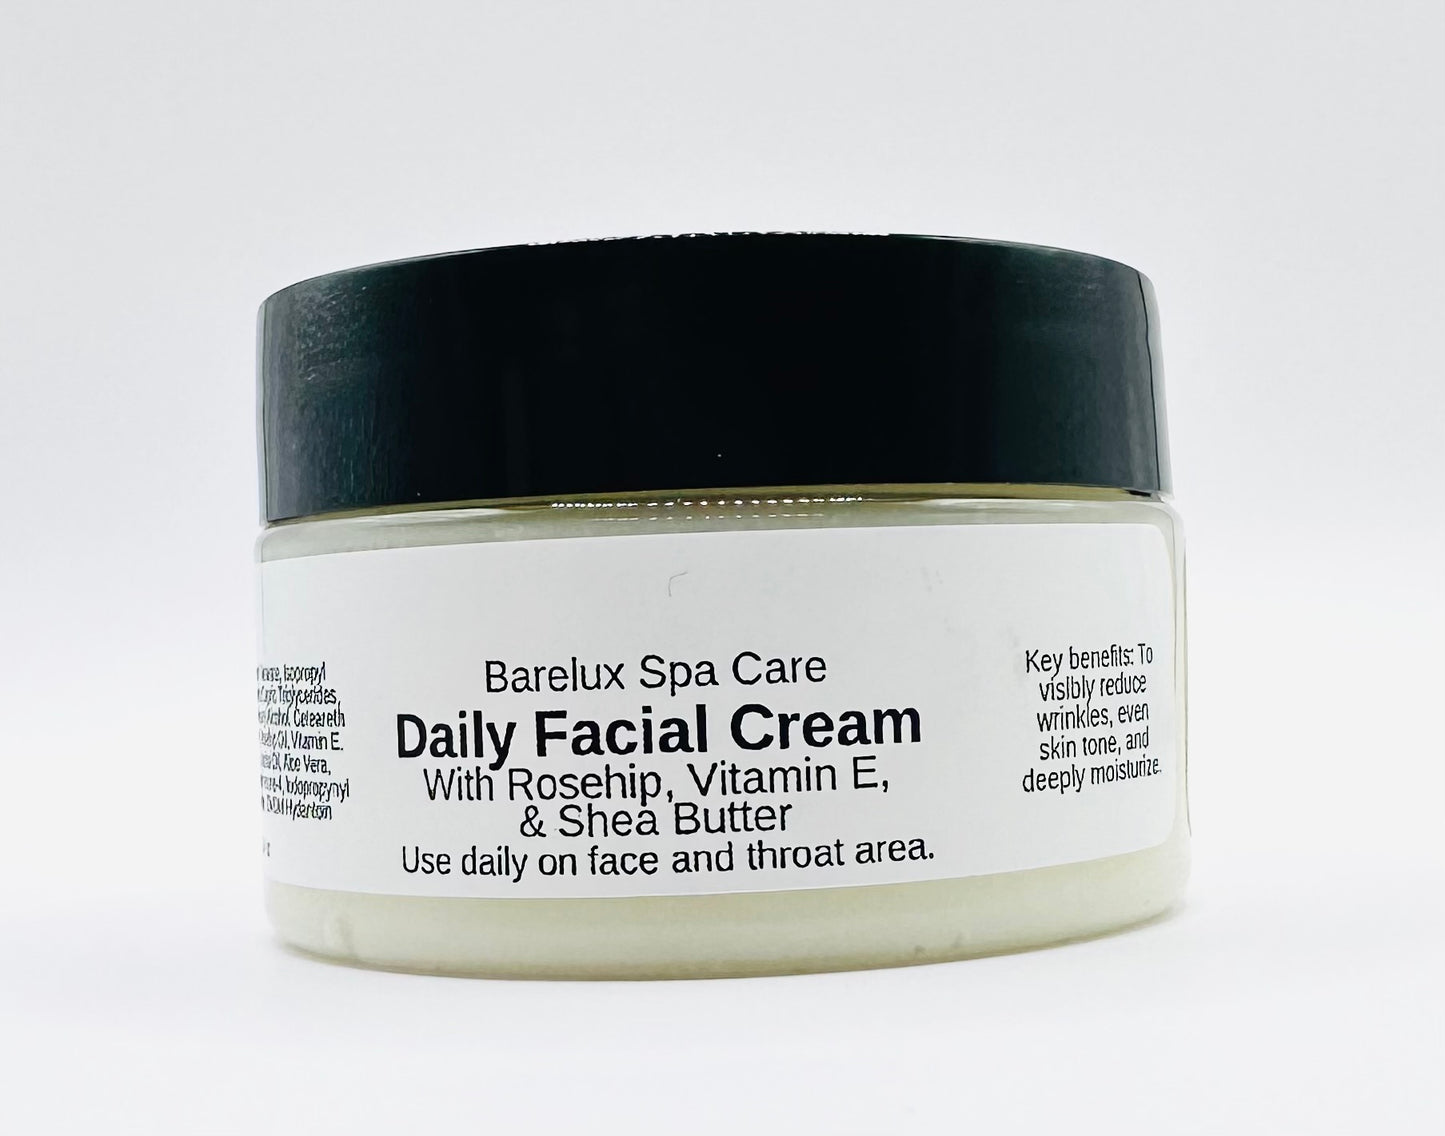 Daily Facial Cream